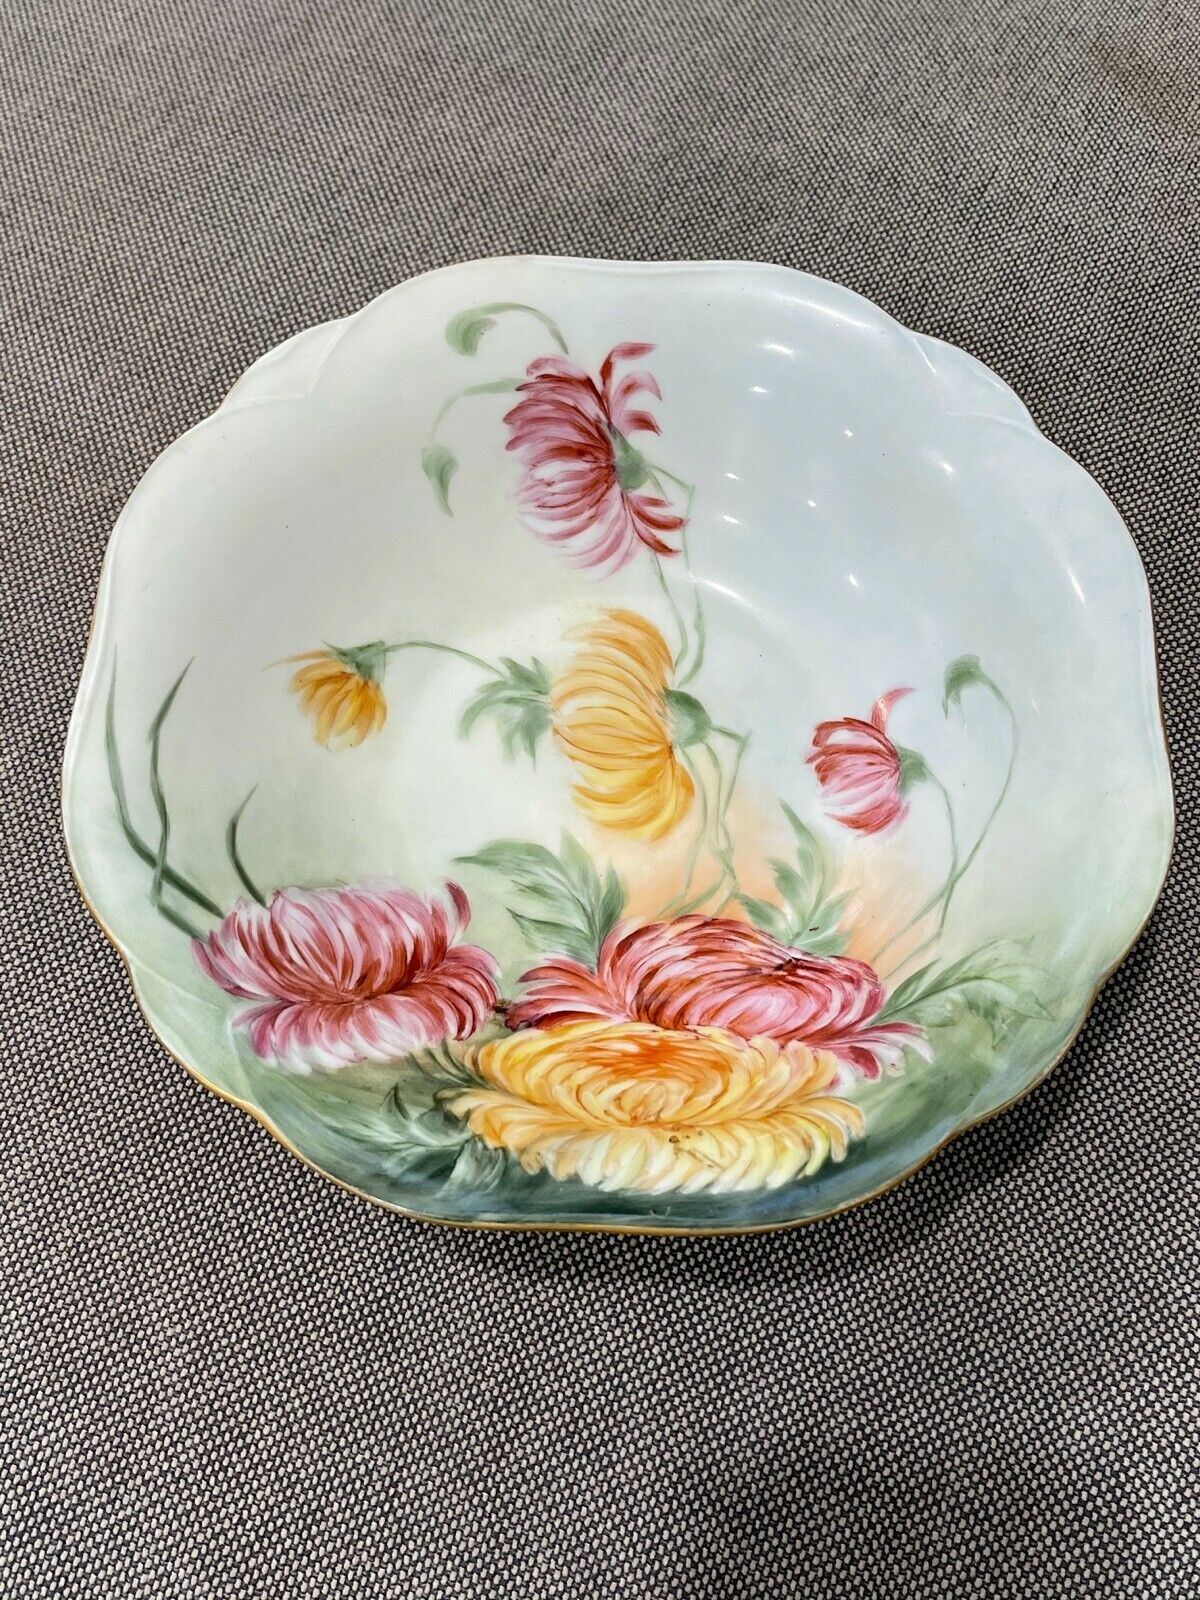 Antique Hermann Ohme Porcelain Centerpiece Bowl w/ Painted Flowers Decoration